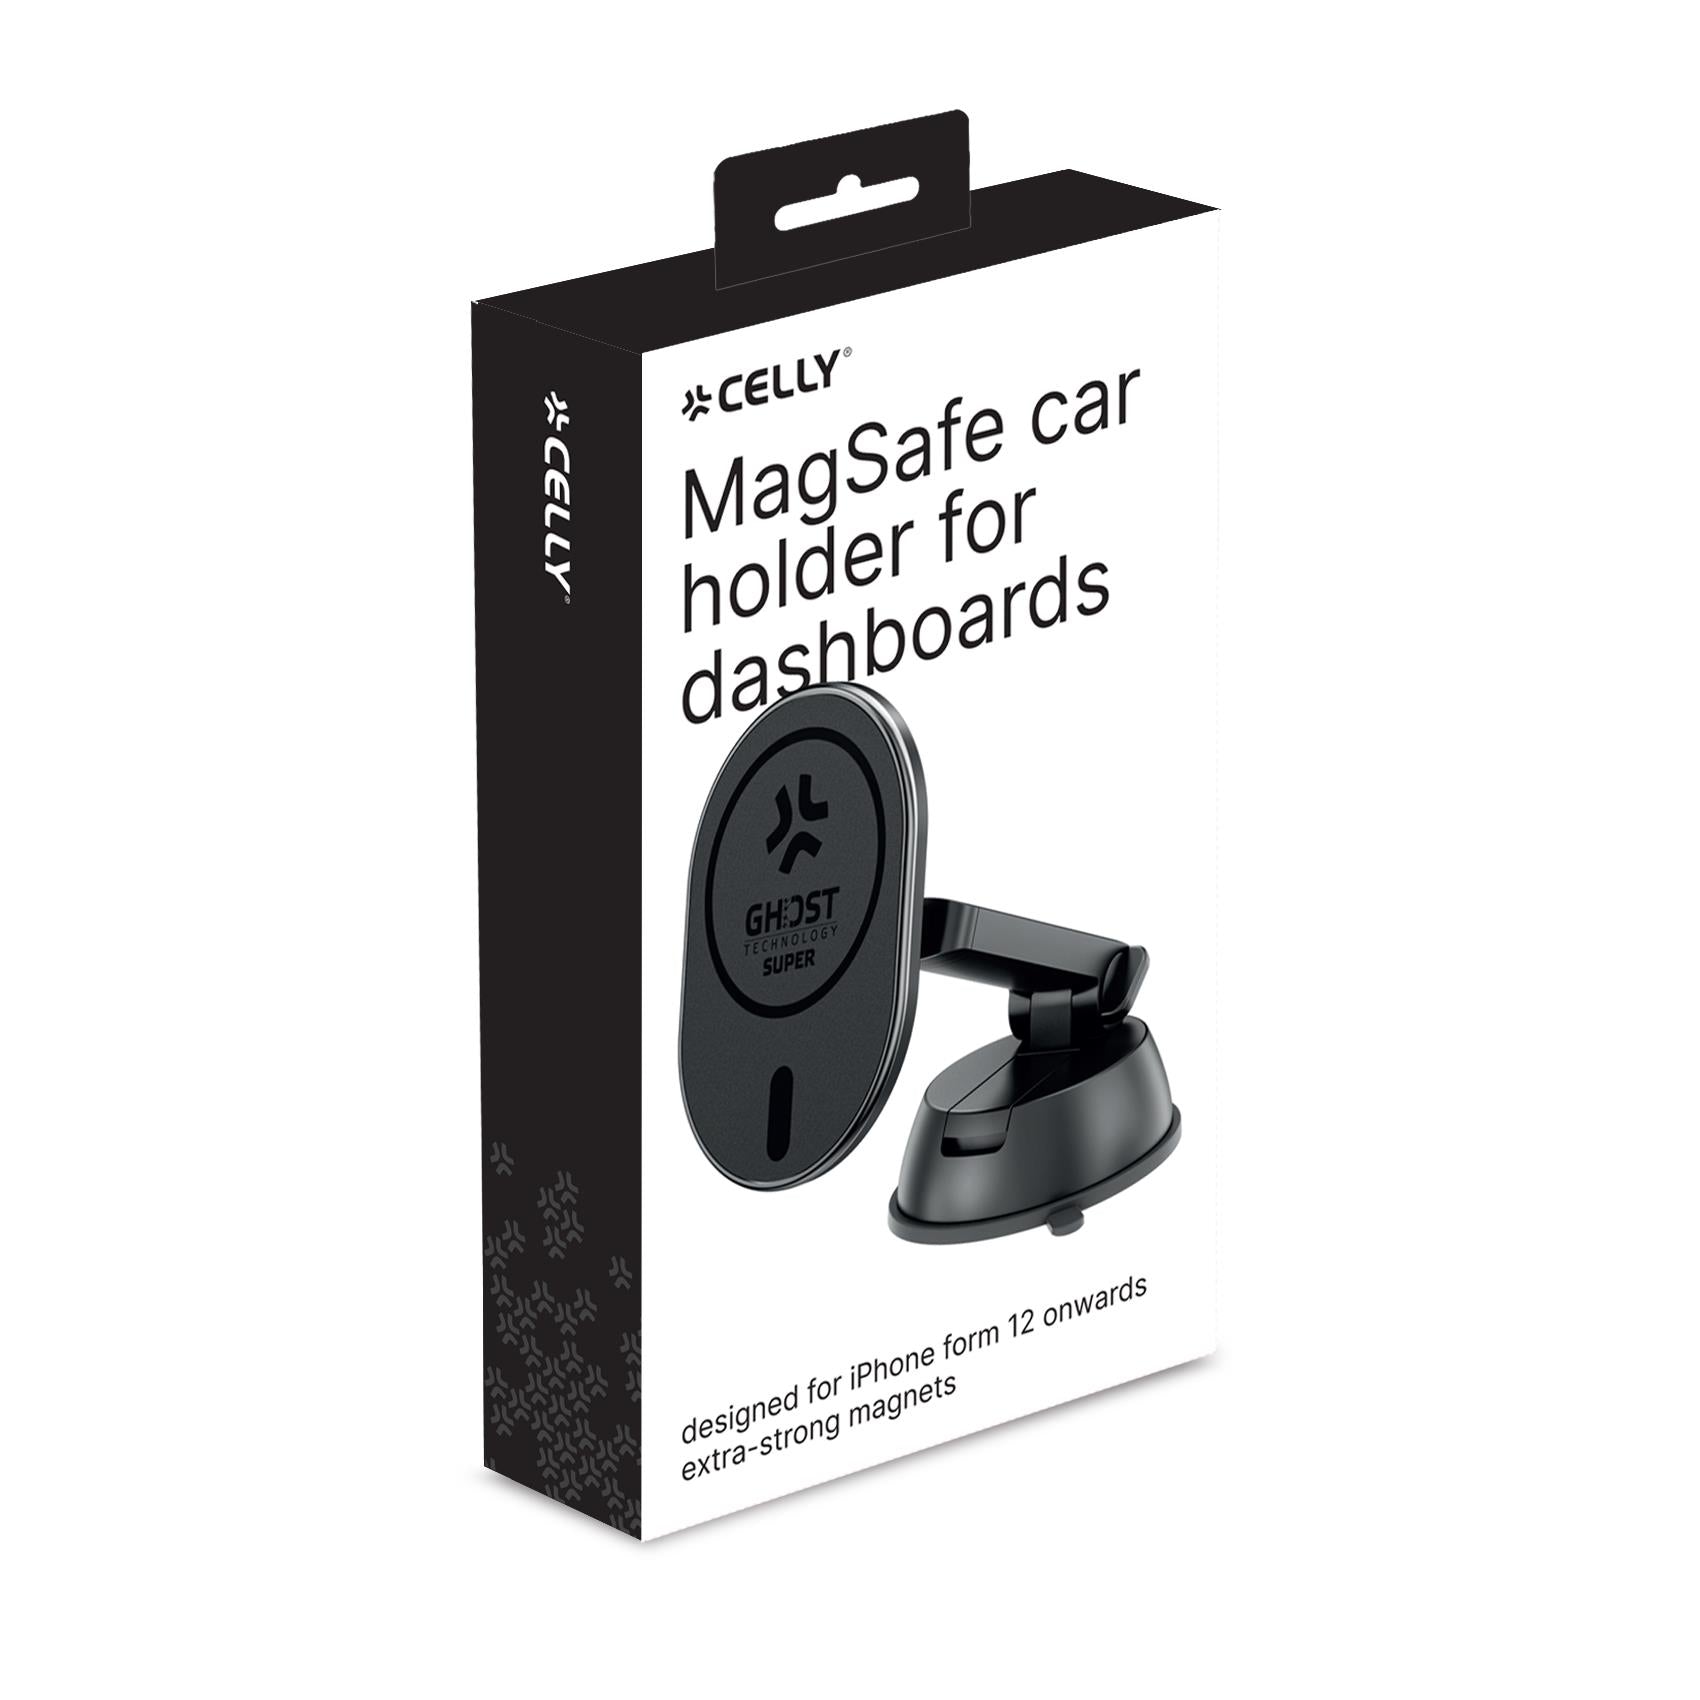 Celly GHOSTSUPERMAGDS - MagSafe Car Holder for Dashboards